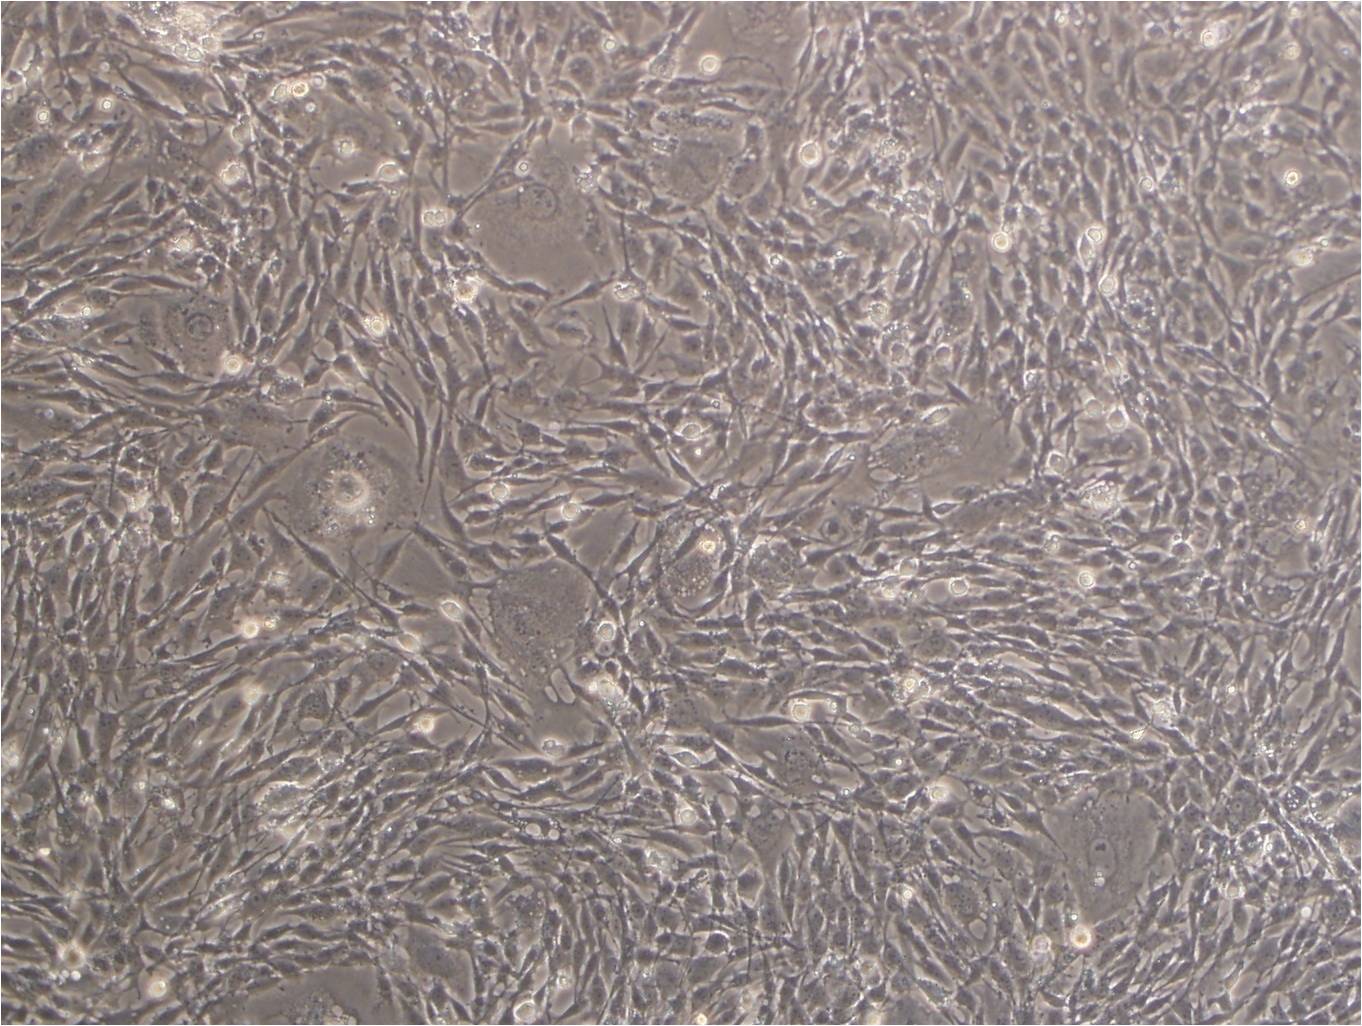 CFSC-2G Cell:鼠肝星形细胞系,CFSC-2G Cell